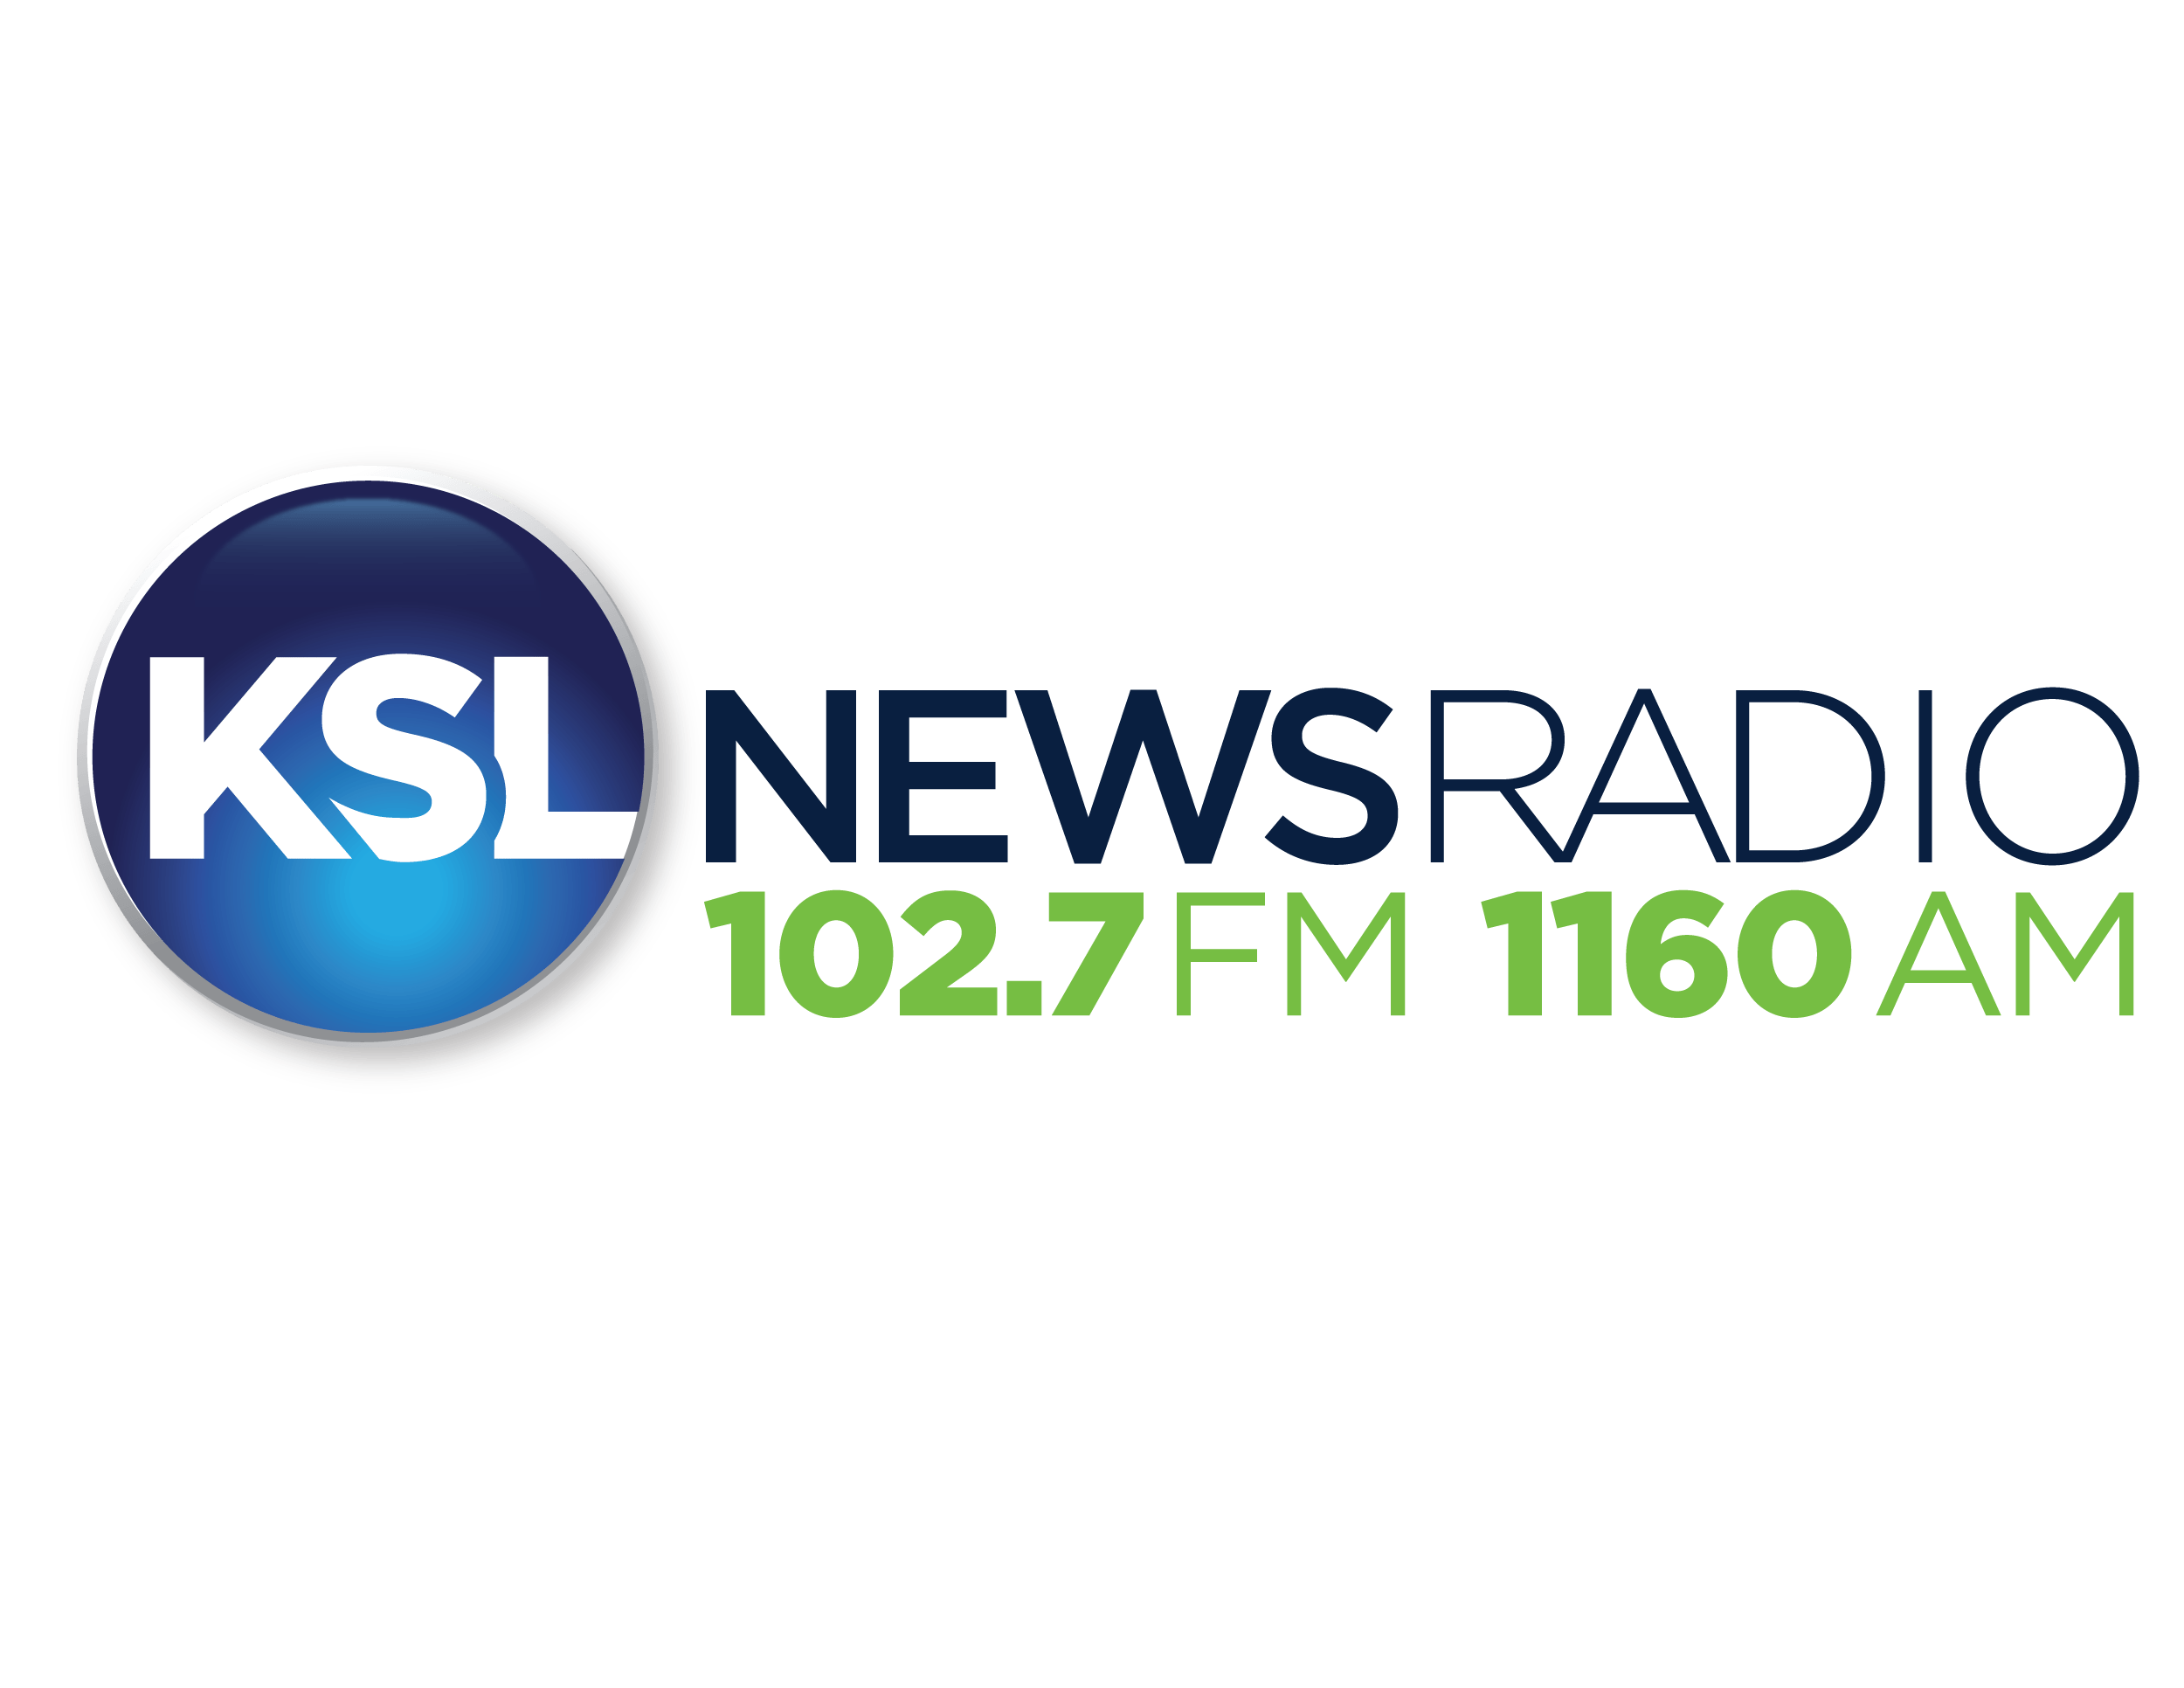 KSL Logo - KSL-NR-revised-logo - Bonneville International